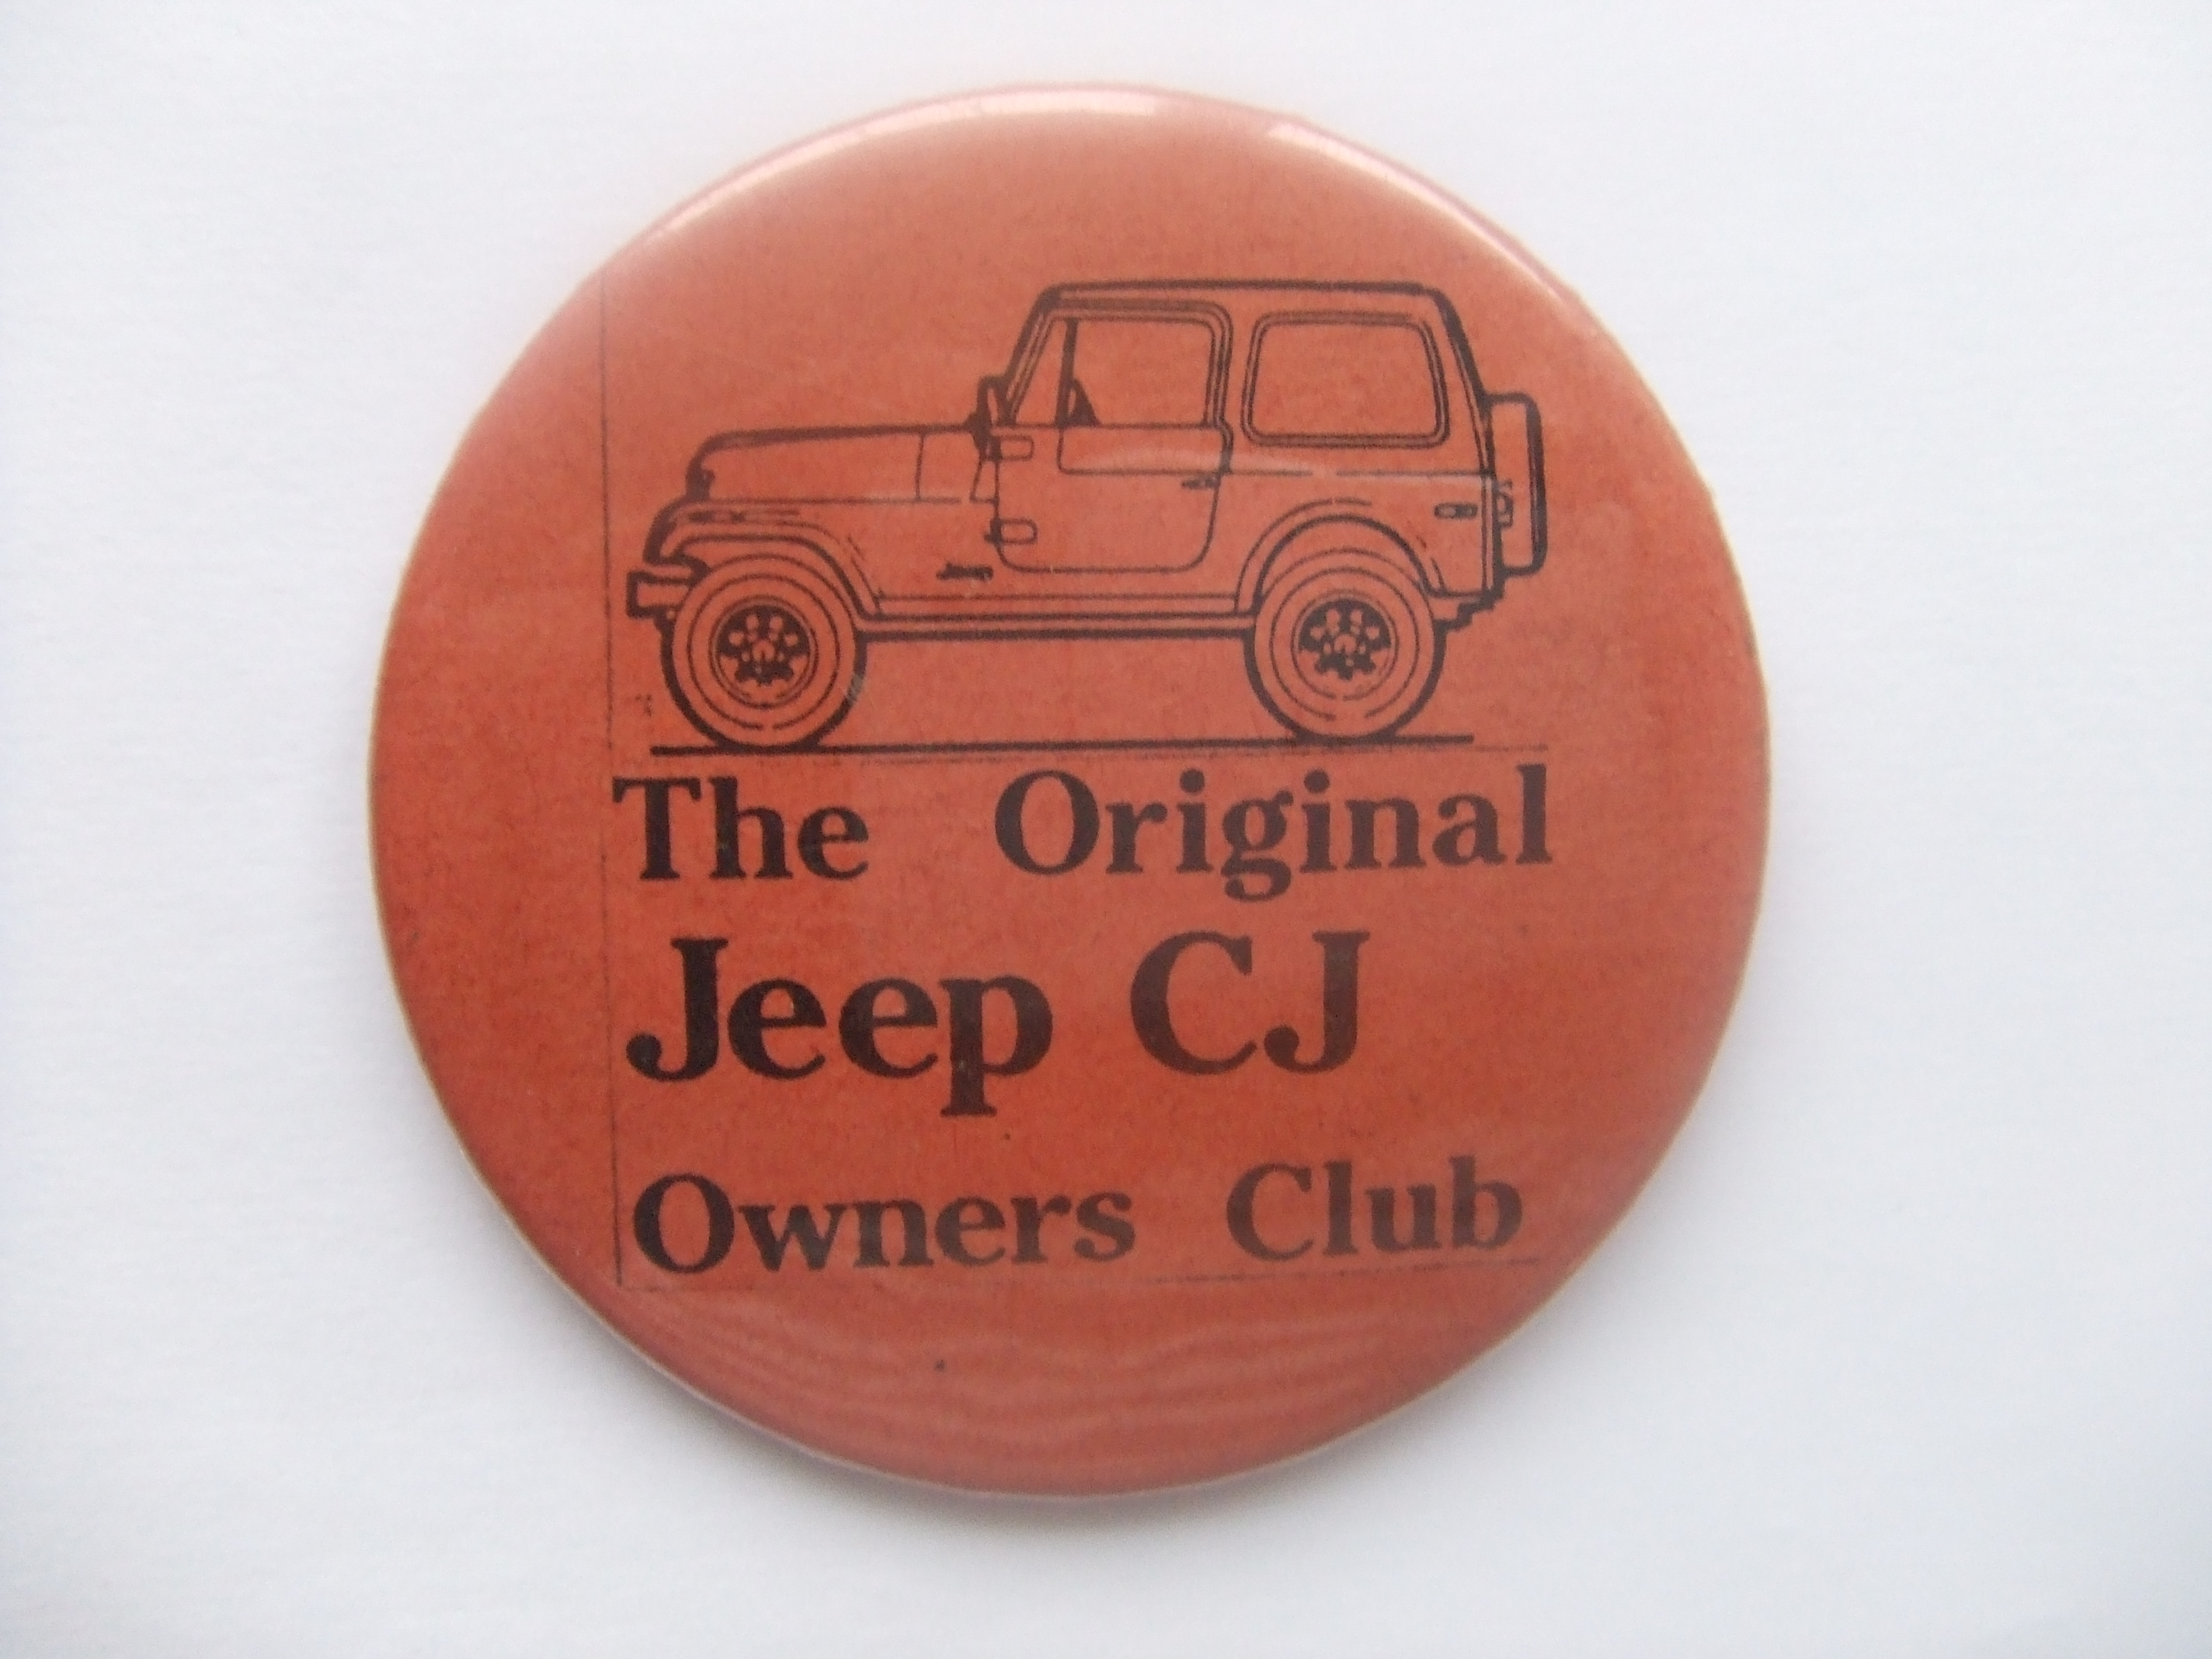 Jeep CJ Ownersclub